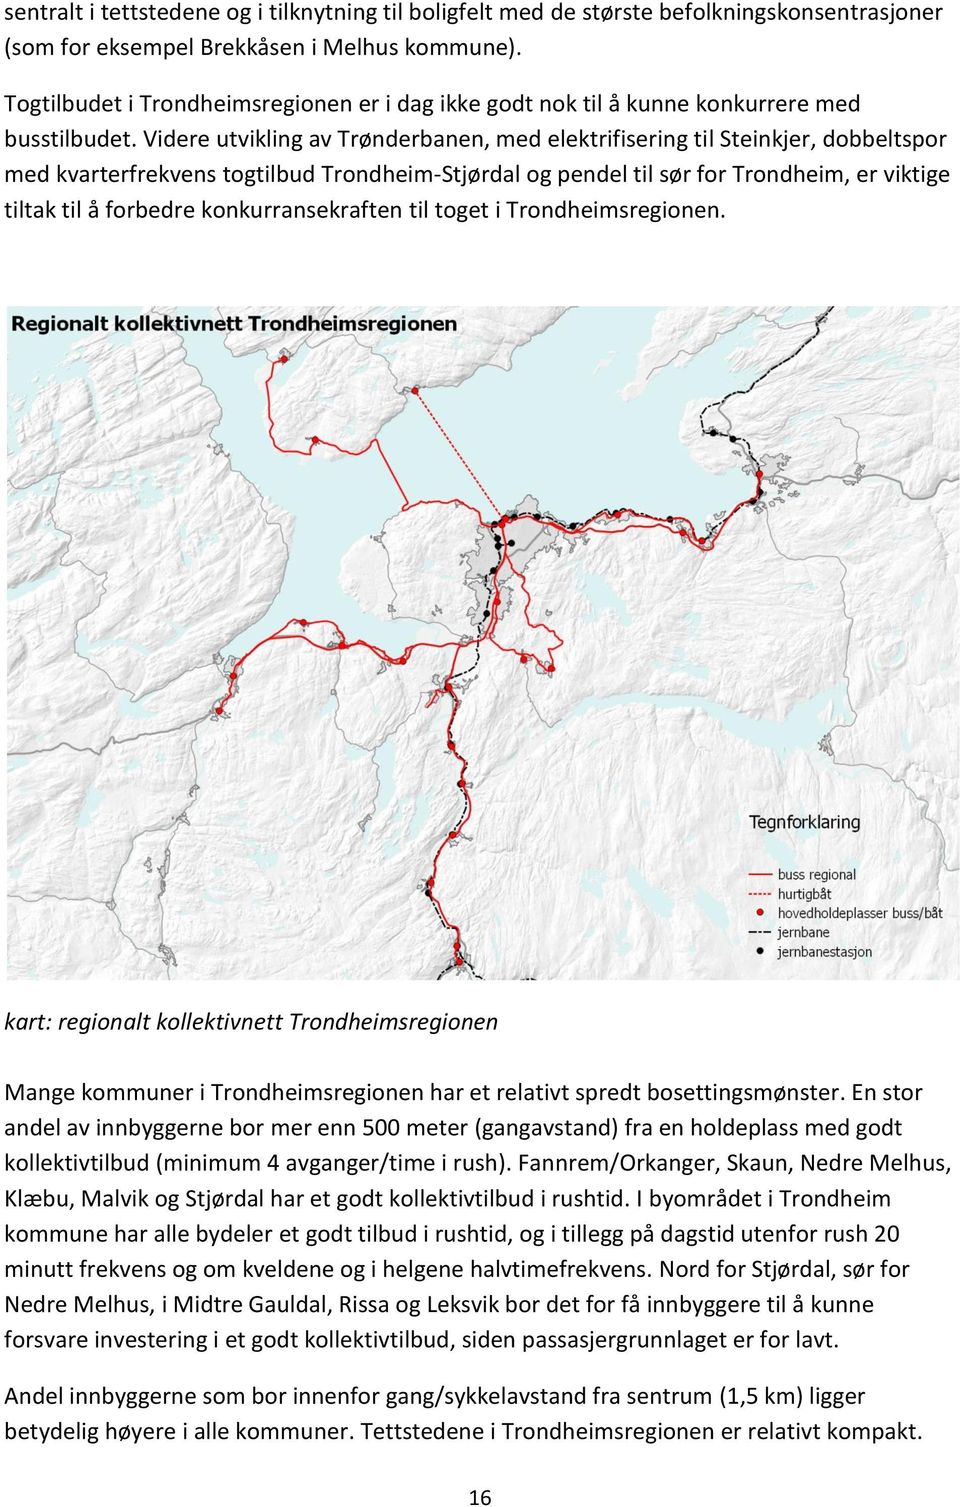 Videre utvikling av Trønderbanen, med elektrifisering til Steinkjer, dobbeltspor med kvarterfrekvens togtilbud Trondheim-Stjørdal og pendel til sør for Trondheim, er viktige tiltak til å forbedre